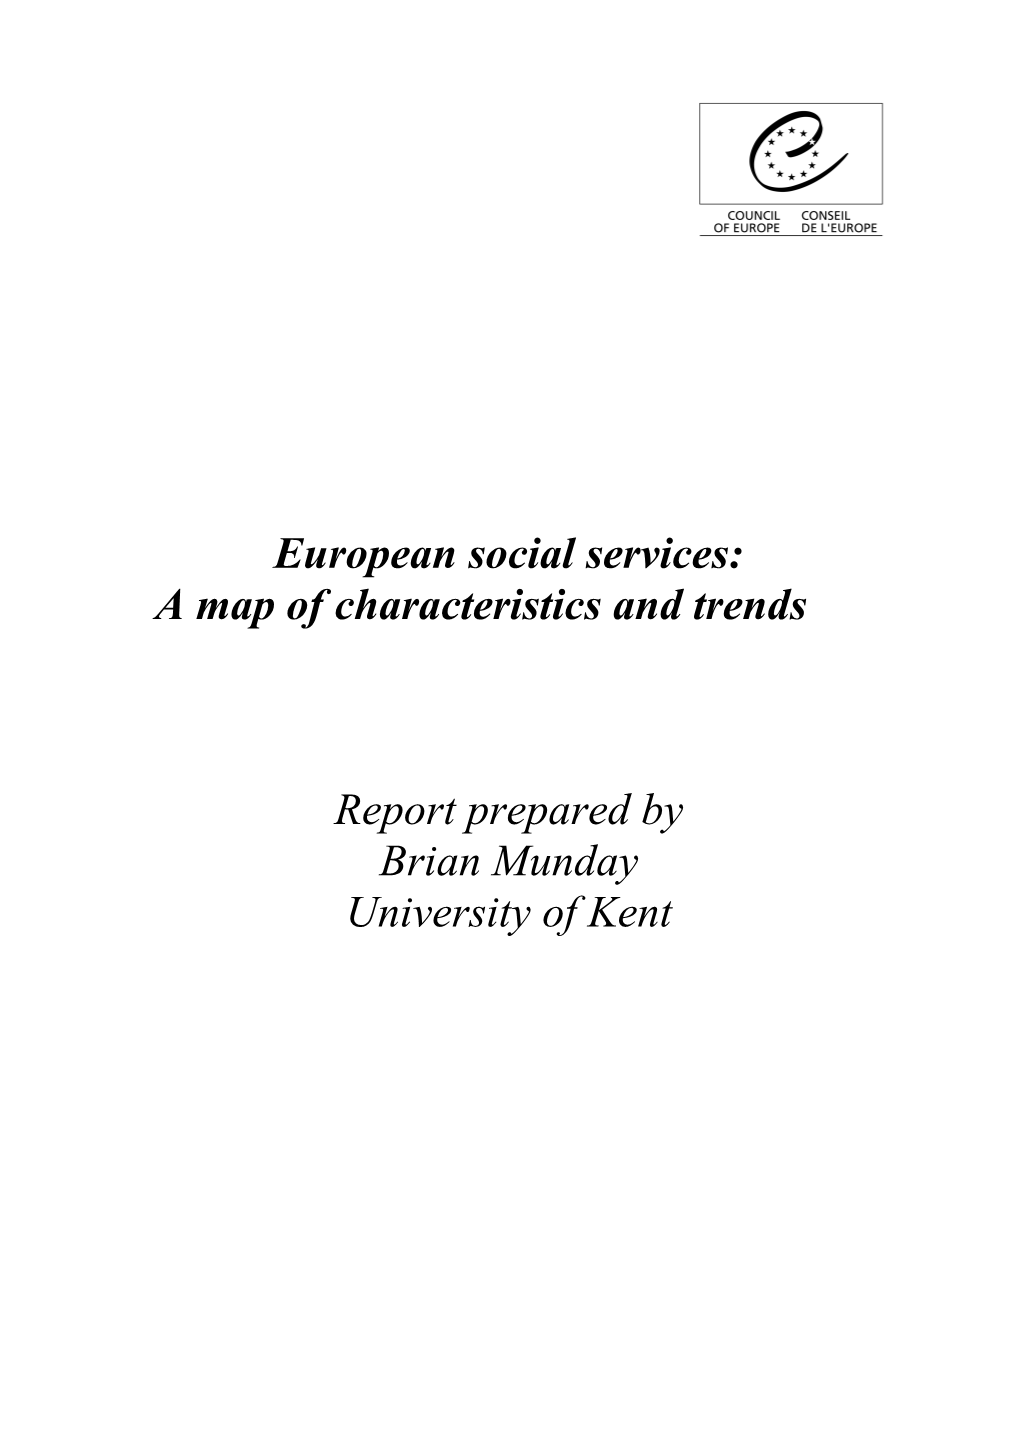 European Social Services